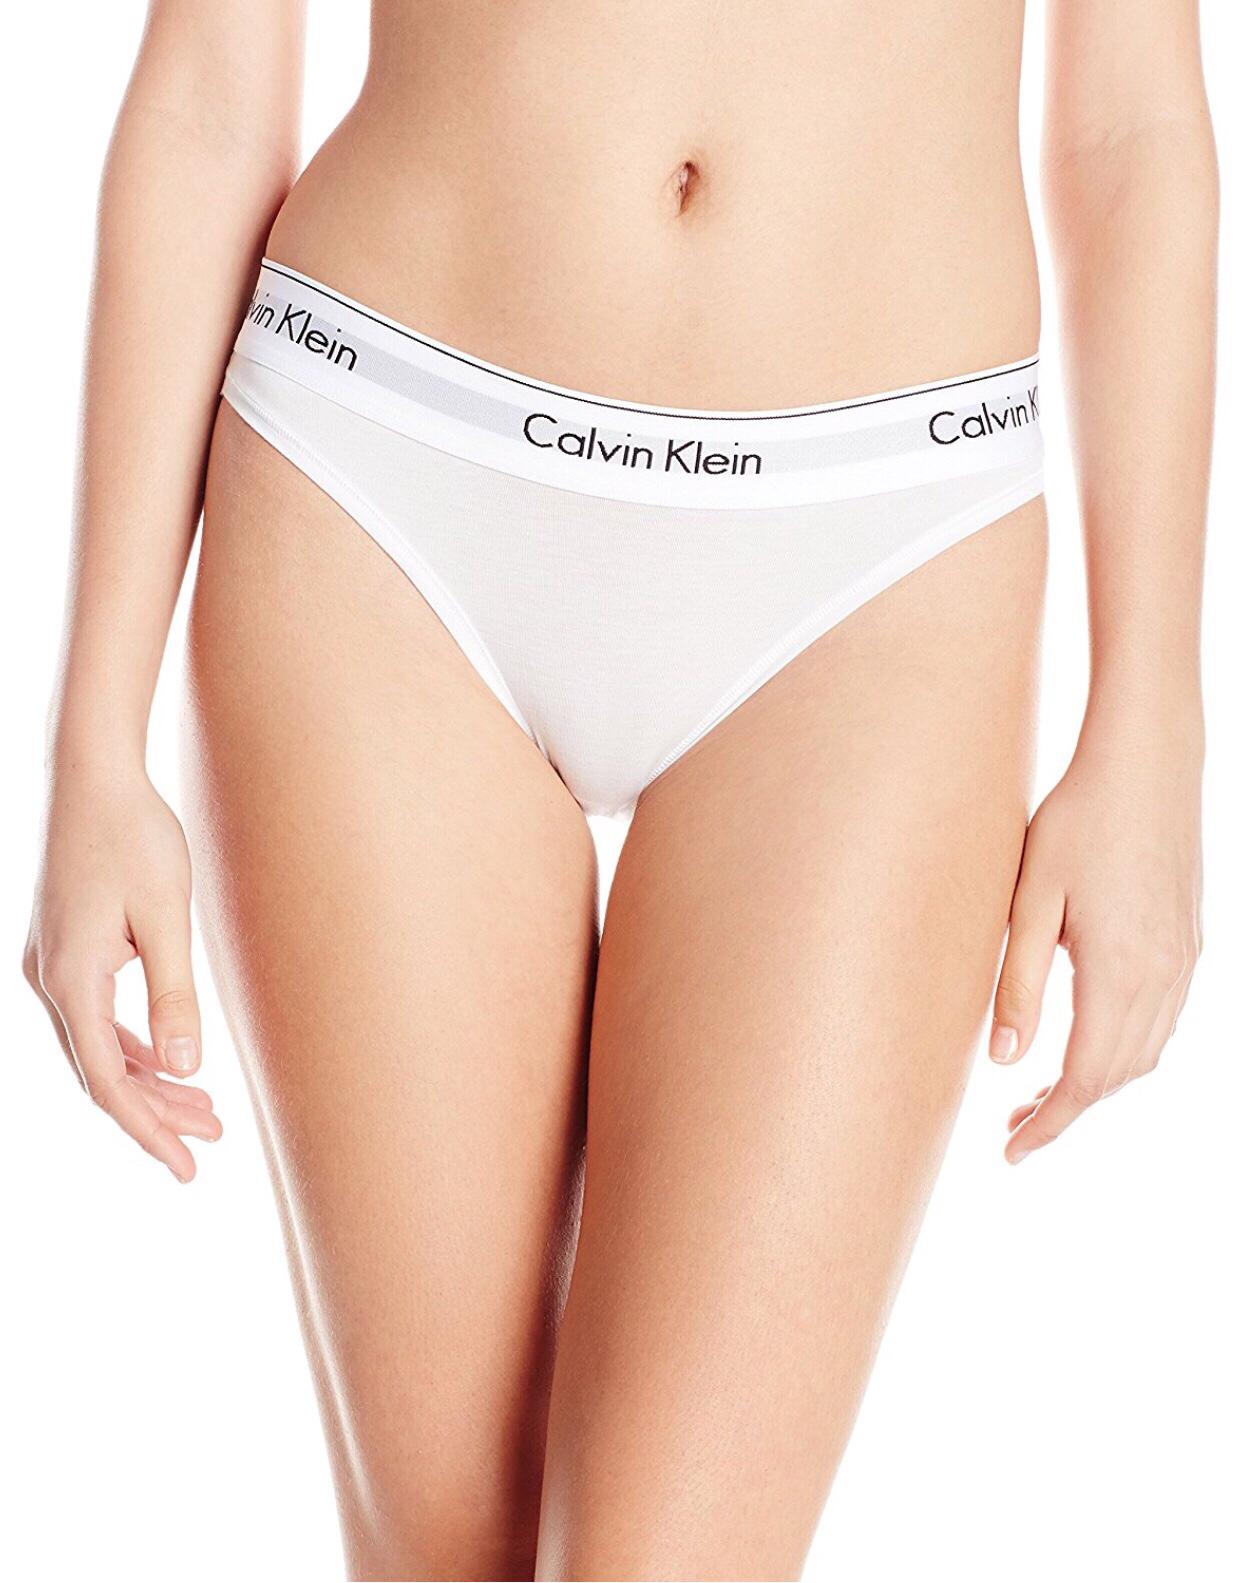 [ของแท้] กางเกงใน Calvin Klein Modern Cotton Bikini